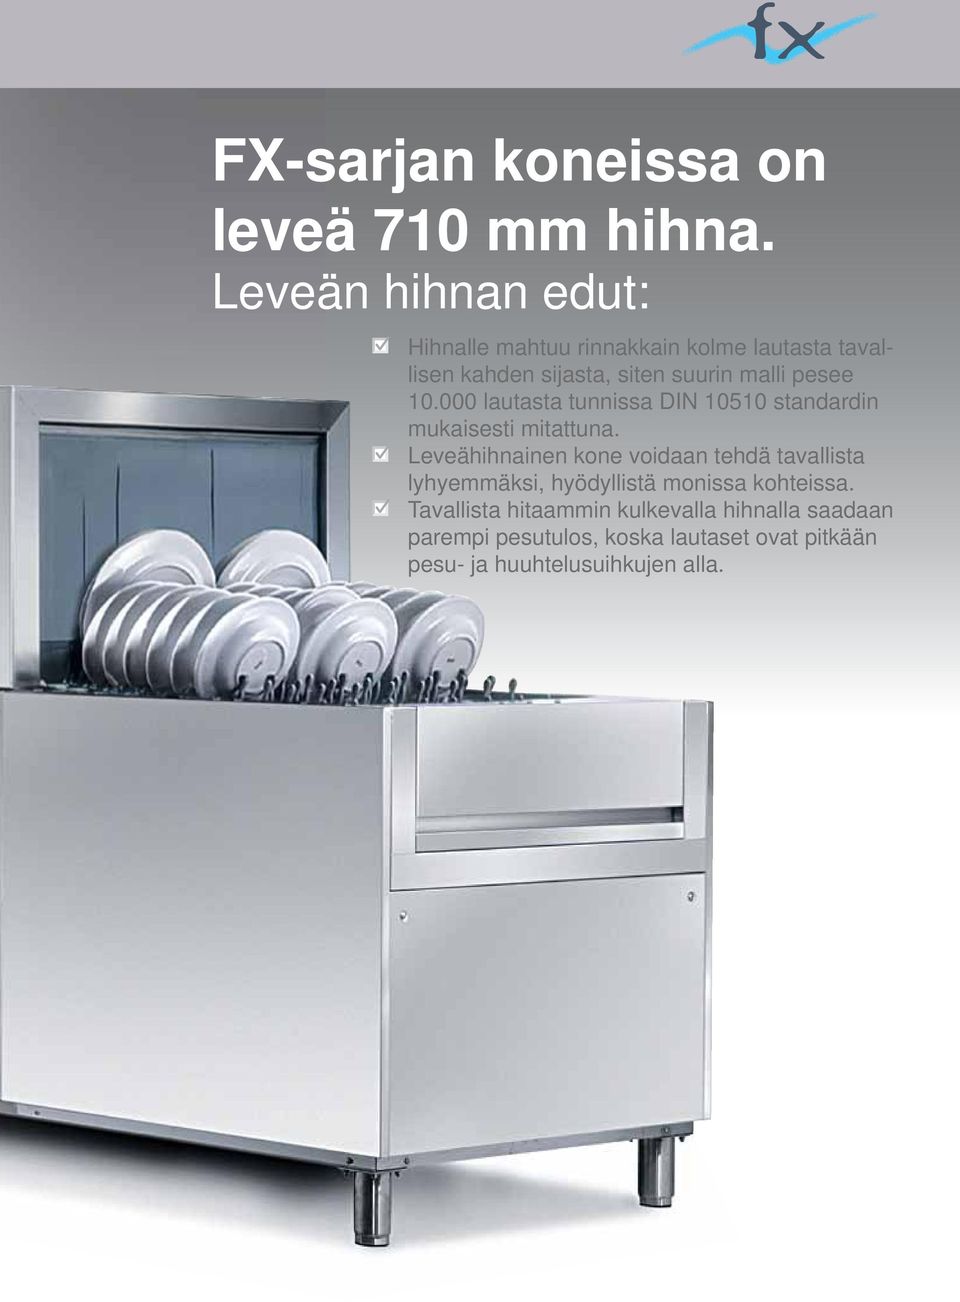 pesee 10.000 lautasta tunnissa DIN 10510 standardin mukaisesti mitattuna.